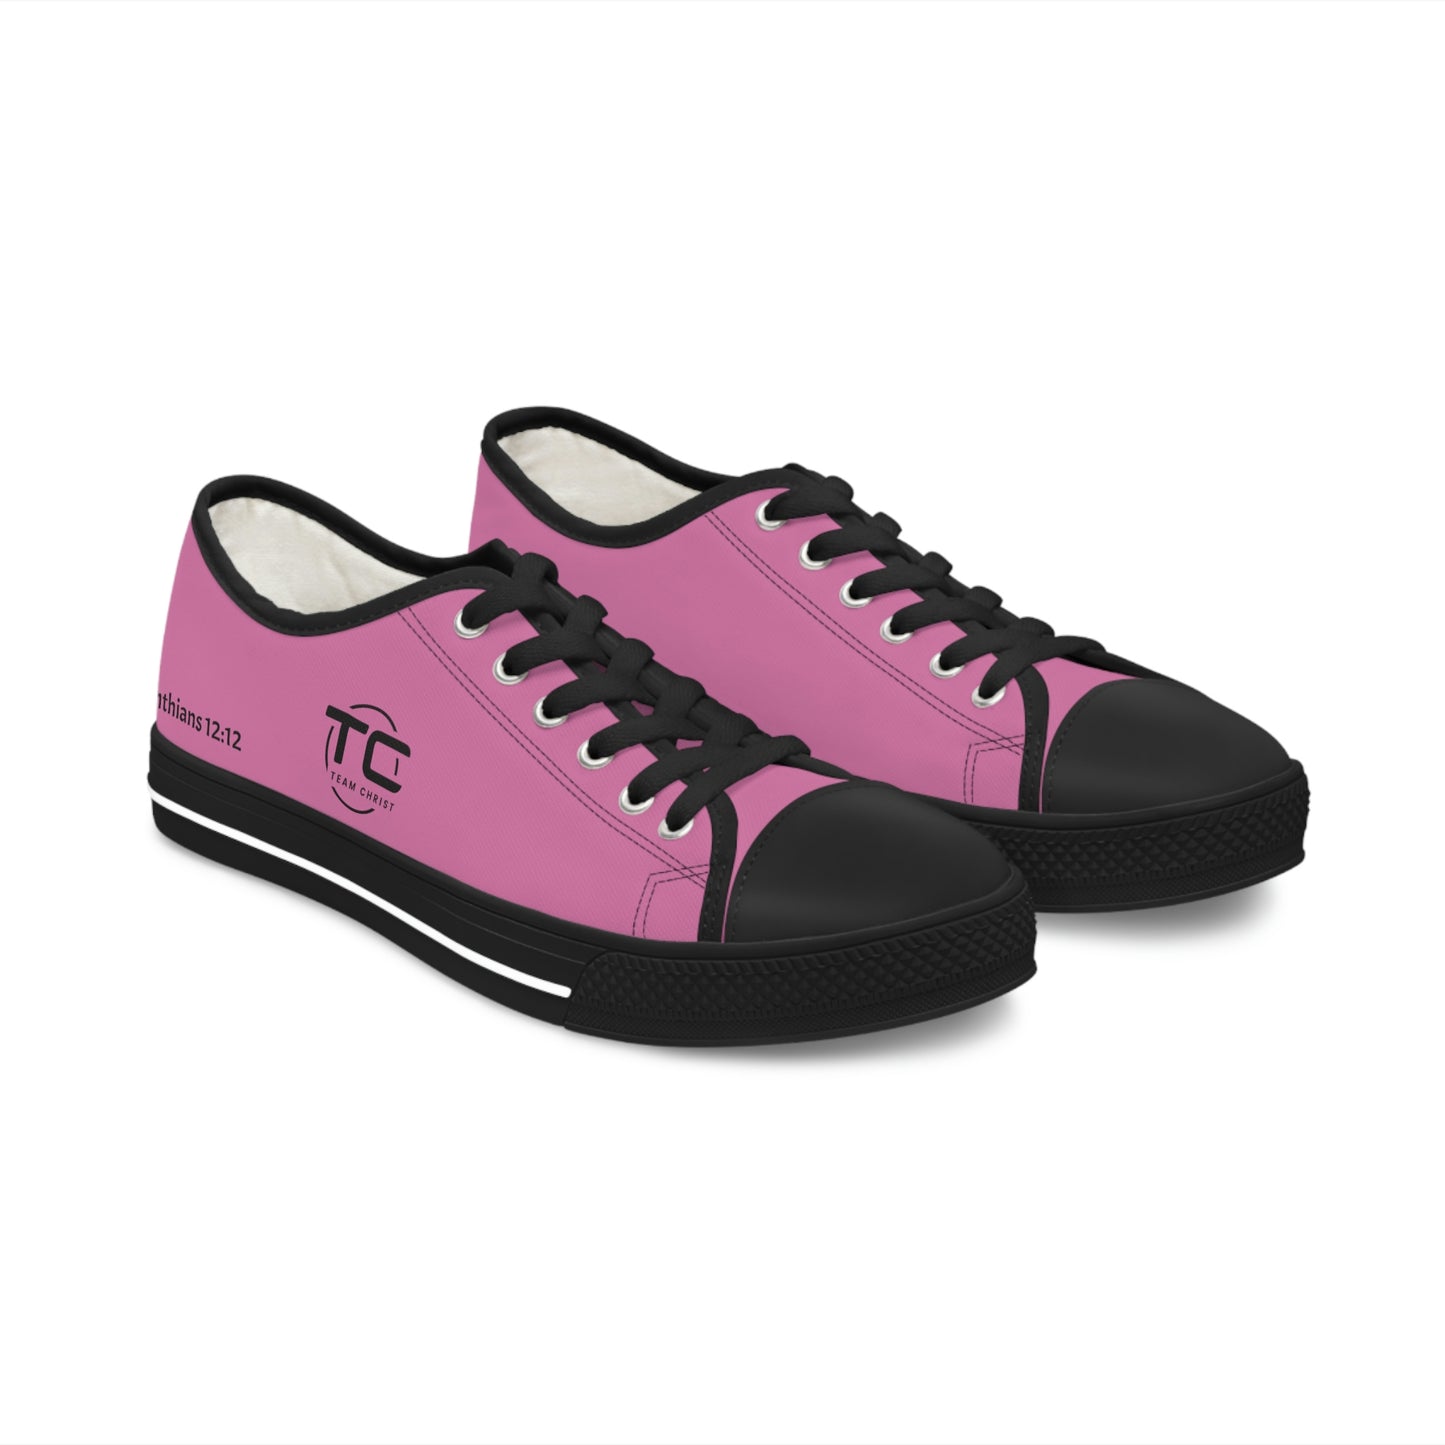 Women's Pink Low Top Sneakers